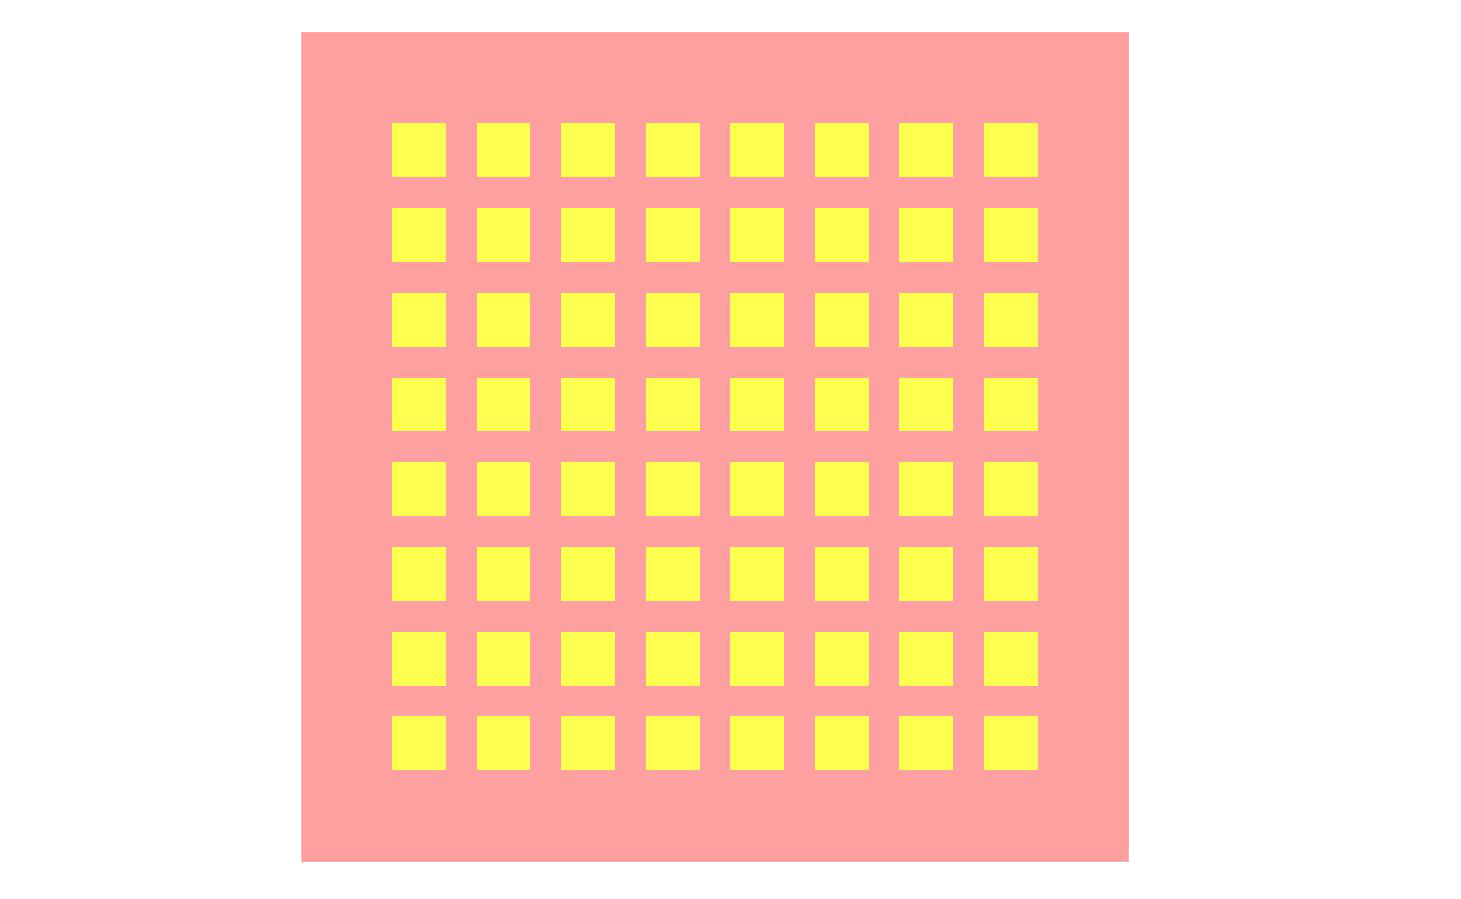 図1: 8x8アレイ・パッチのレイアウトを示すアンテナ形状の上面図。